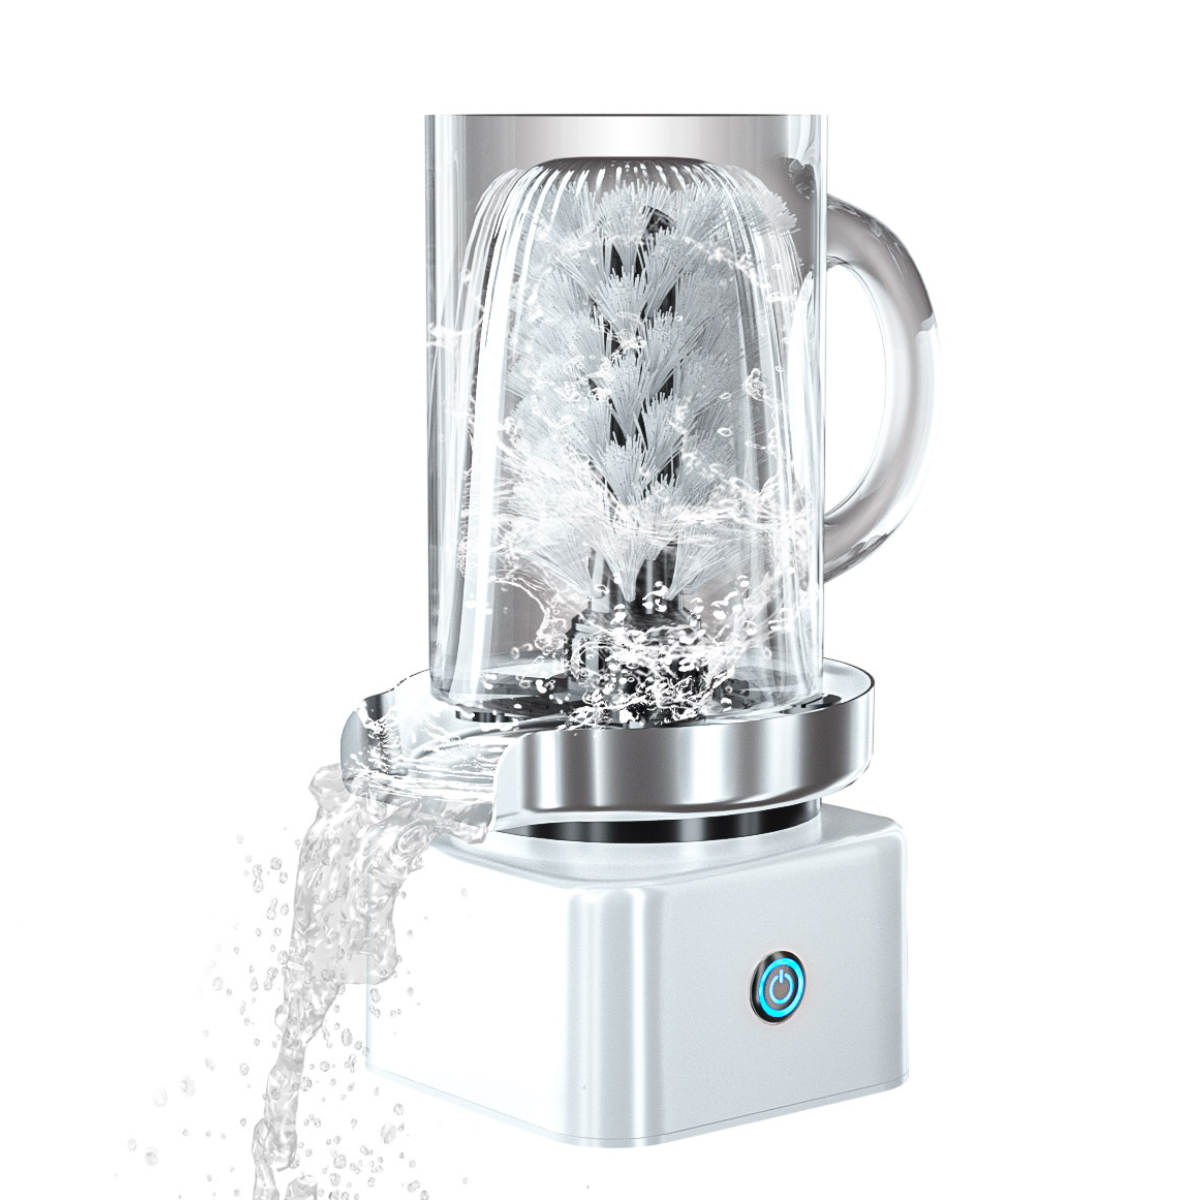 UWOT Tassenwaschmaschine: Automatische Reinigung, Weiß und Nylonborsten, Drehen, Tiefenreinigung Drücken Reinigungsbürste